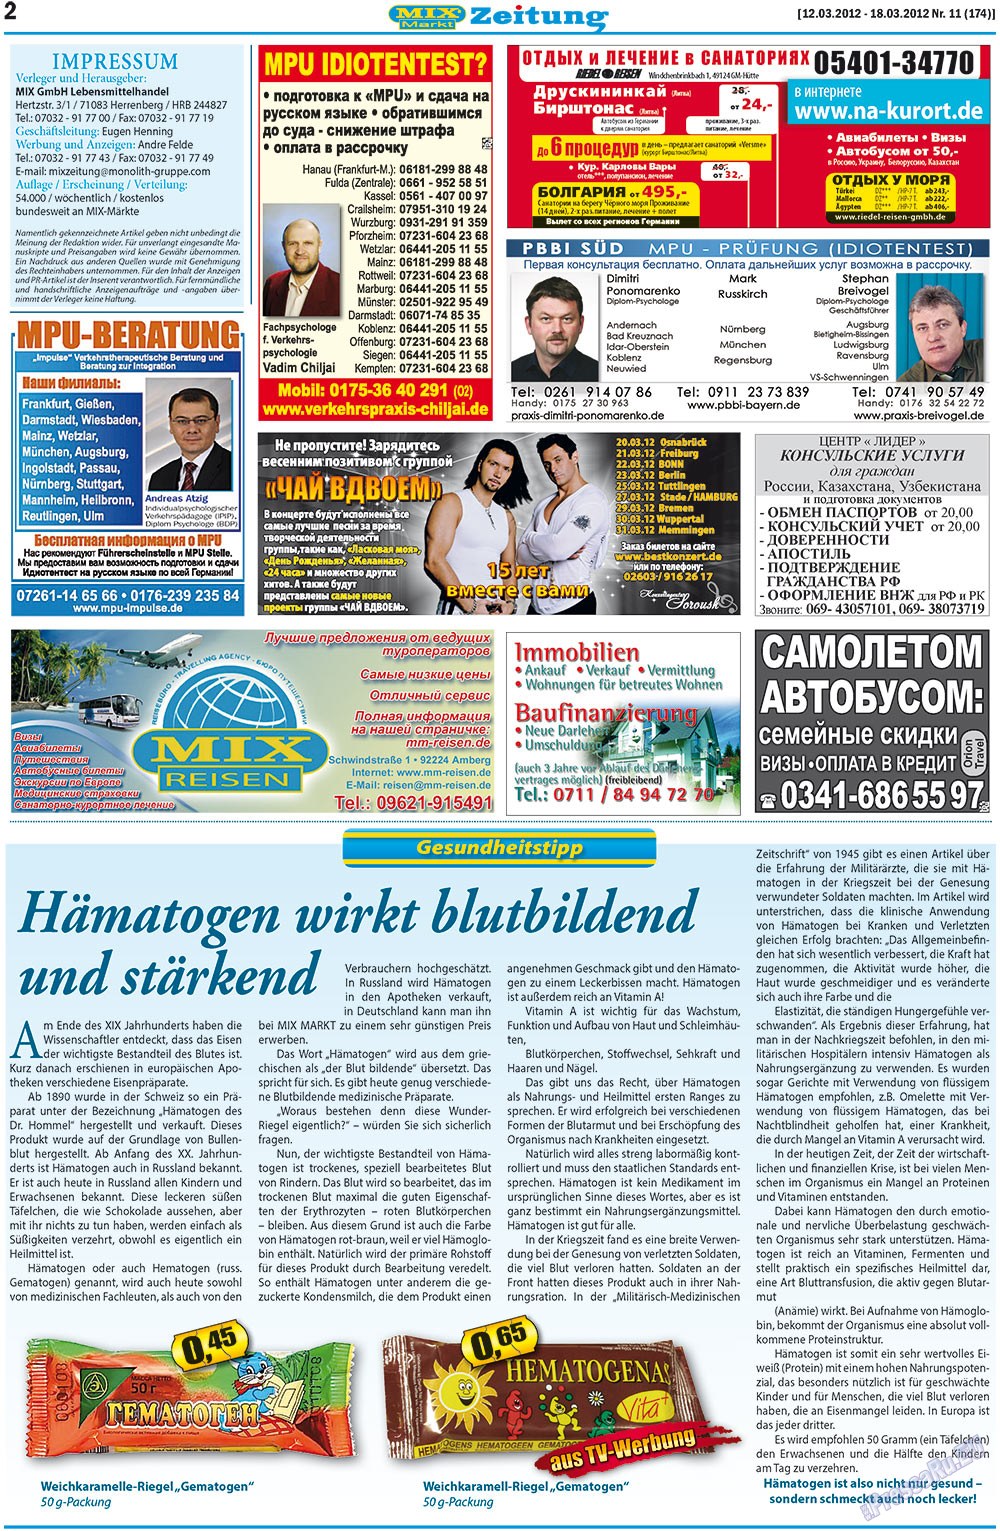 MIX-Markt Zeitung (газета). 2012 год, номер 11, стр. 2